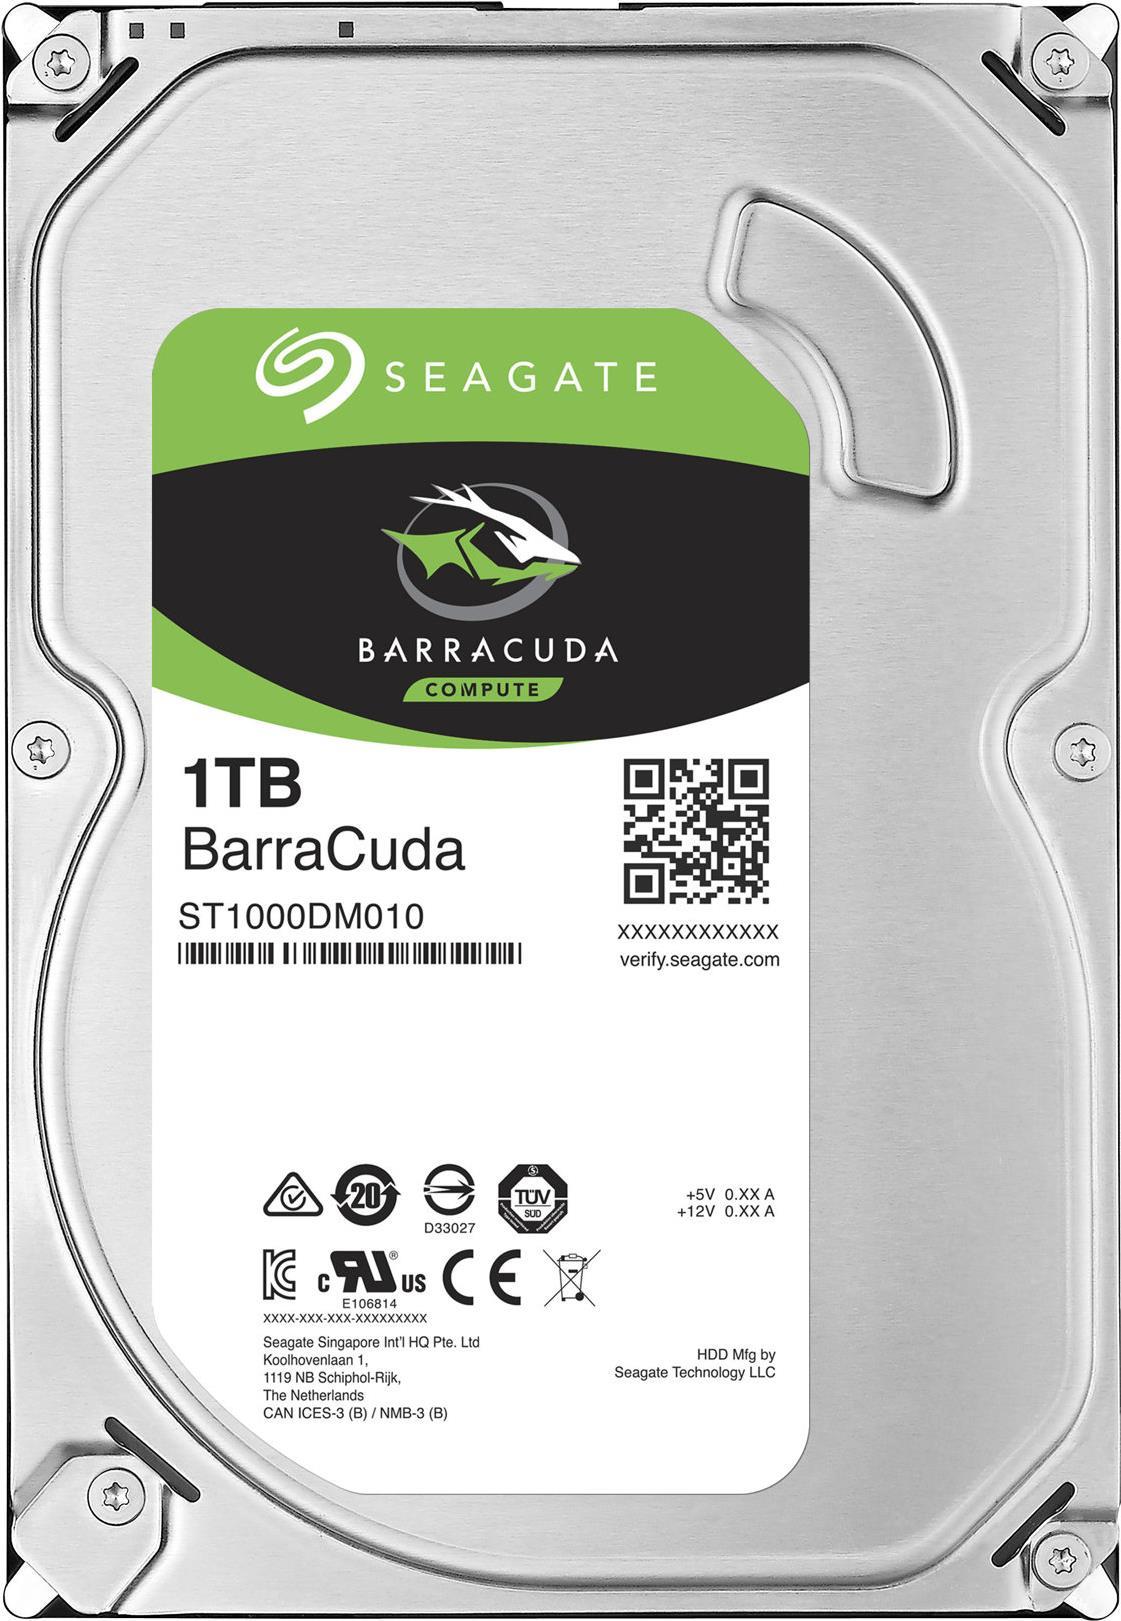 SEAGATE Desktop Barracuda 7200 1TB HDD 7200rpm SATA serial ATA 6Gb/s NCQ 64MB cache 8,9cm 3.5" BLK (ST1000DM010)